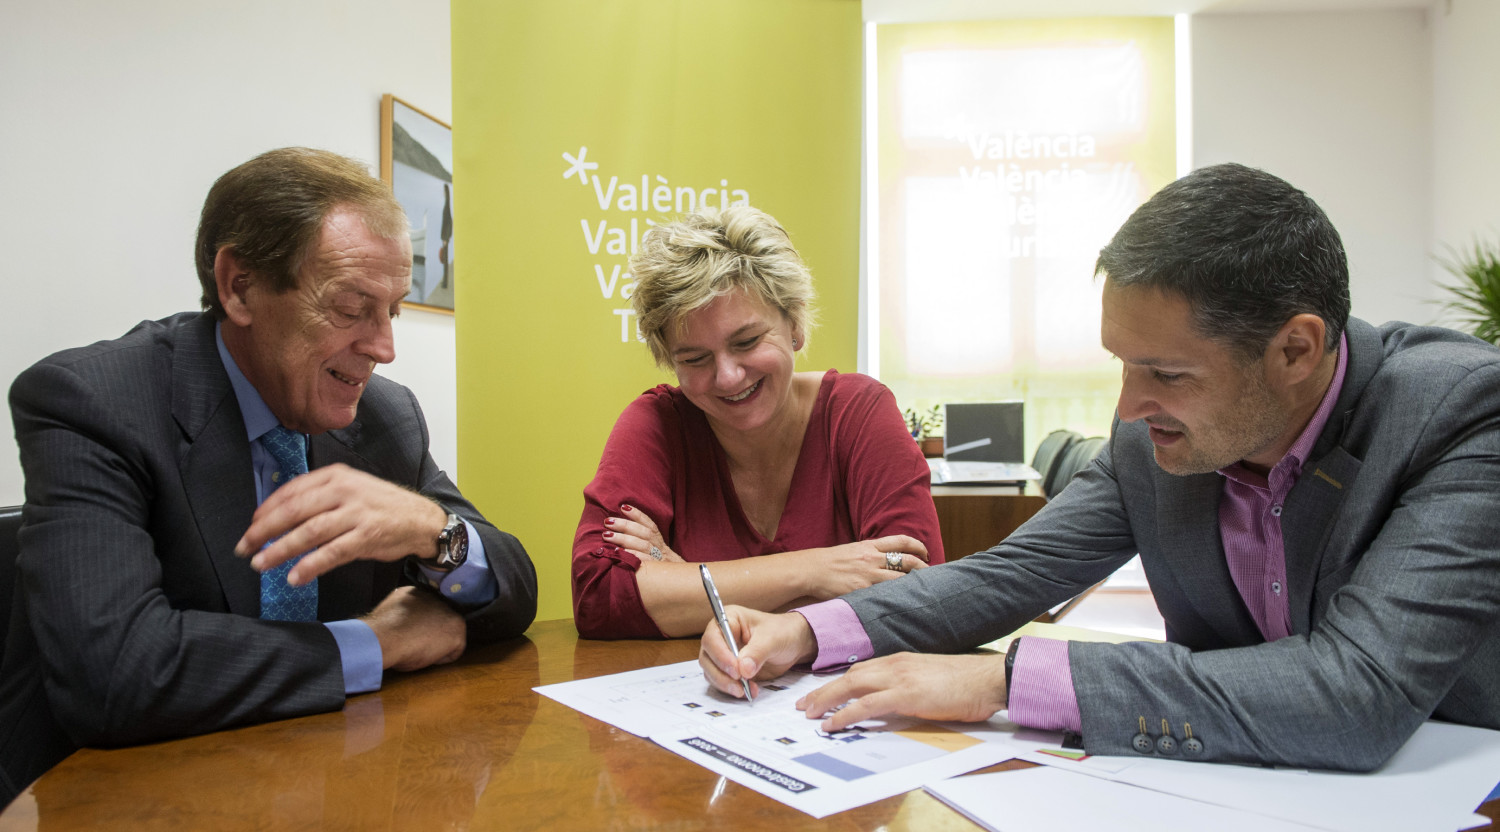 València Turisme representará a los productores valencianos y su apuesta turística en Gastrónoma 2016